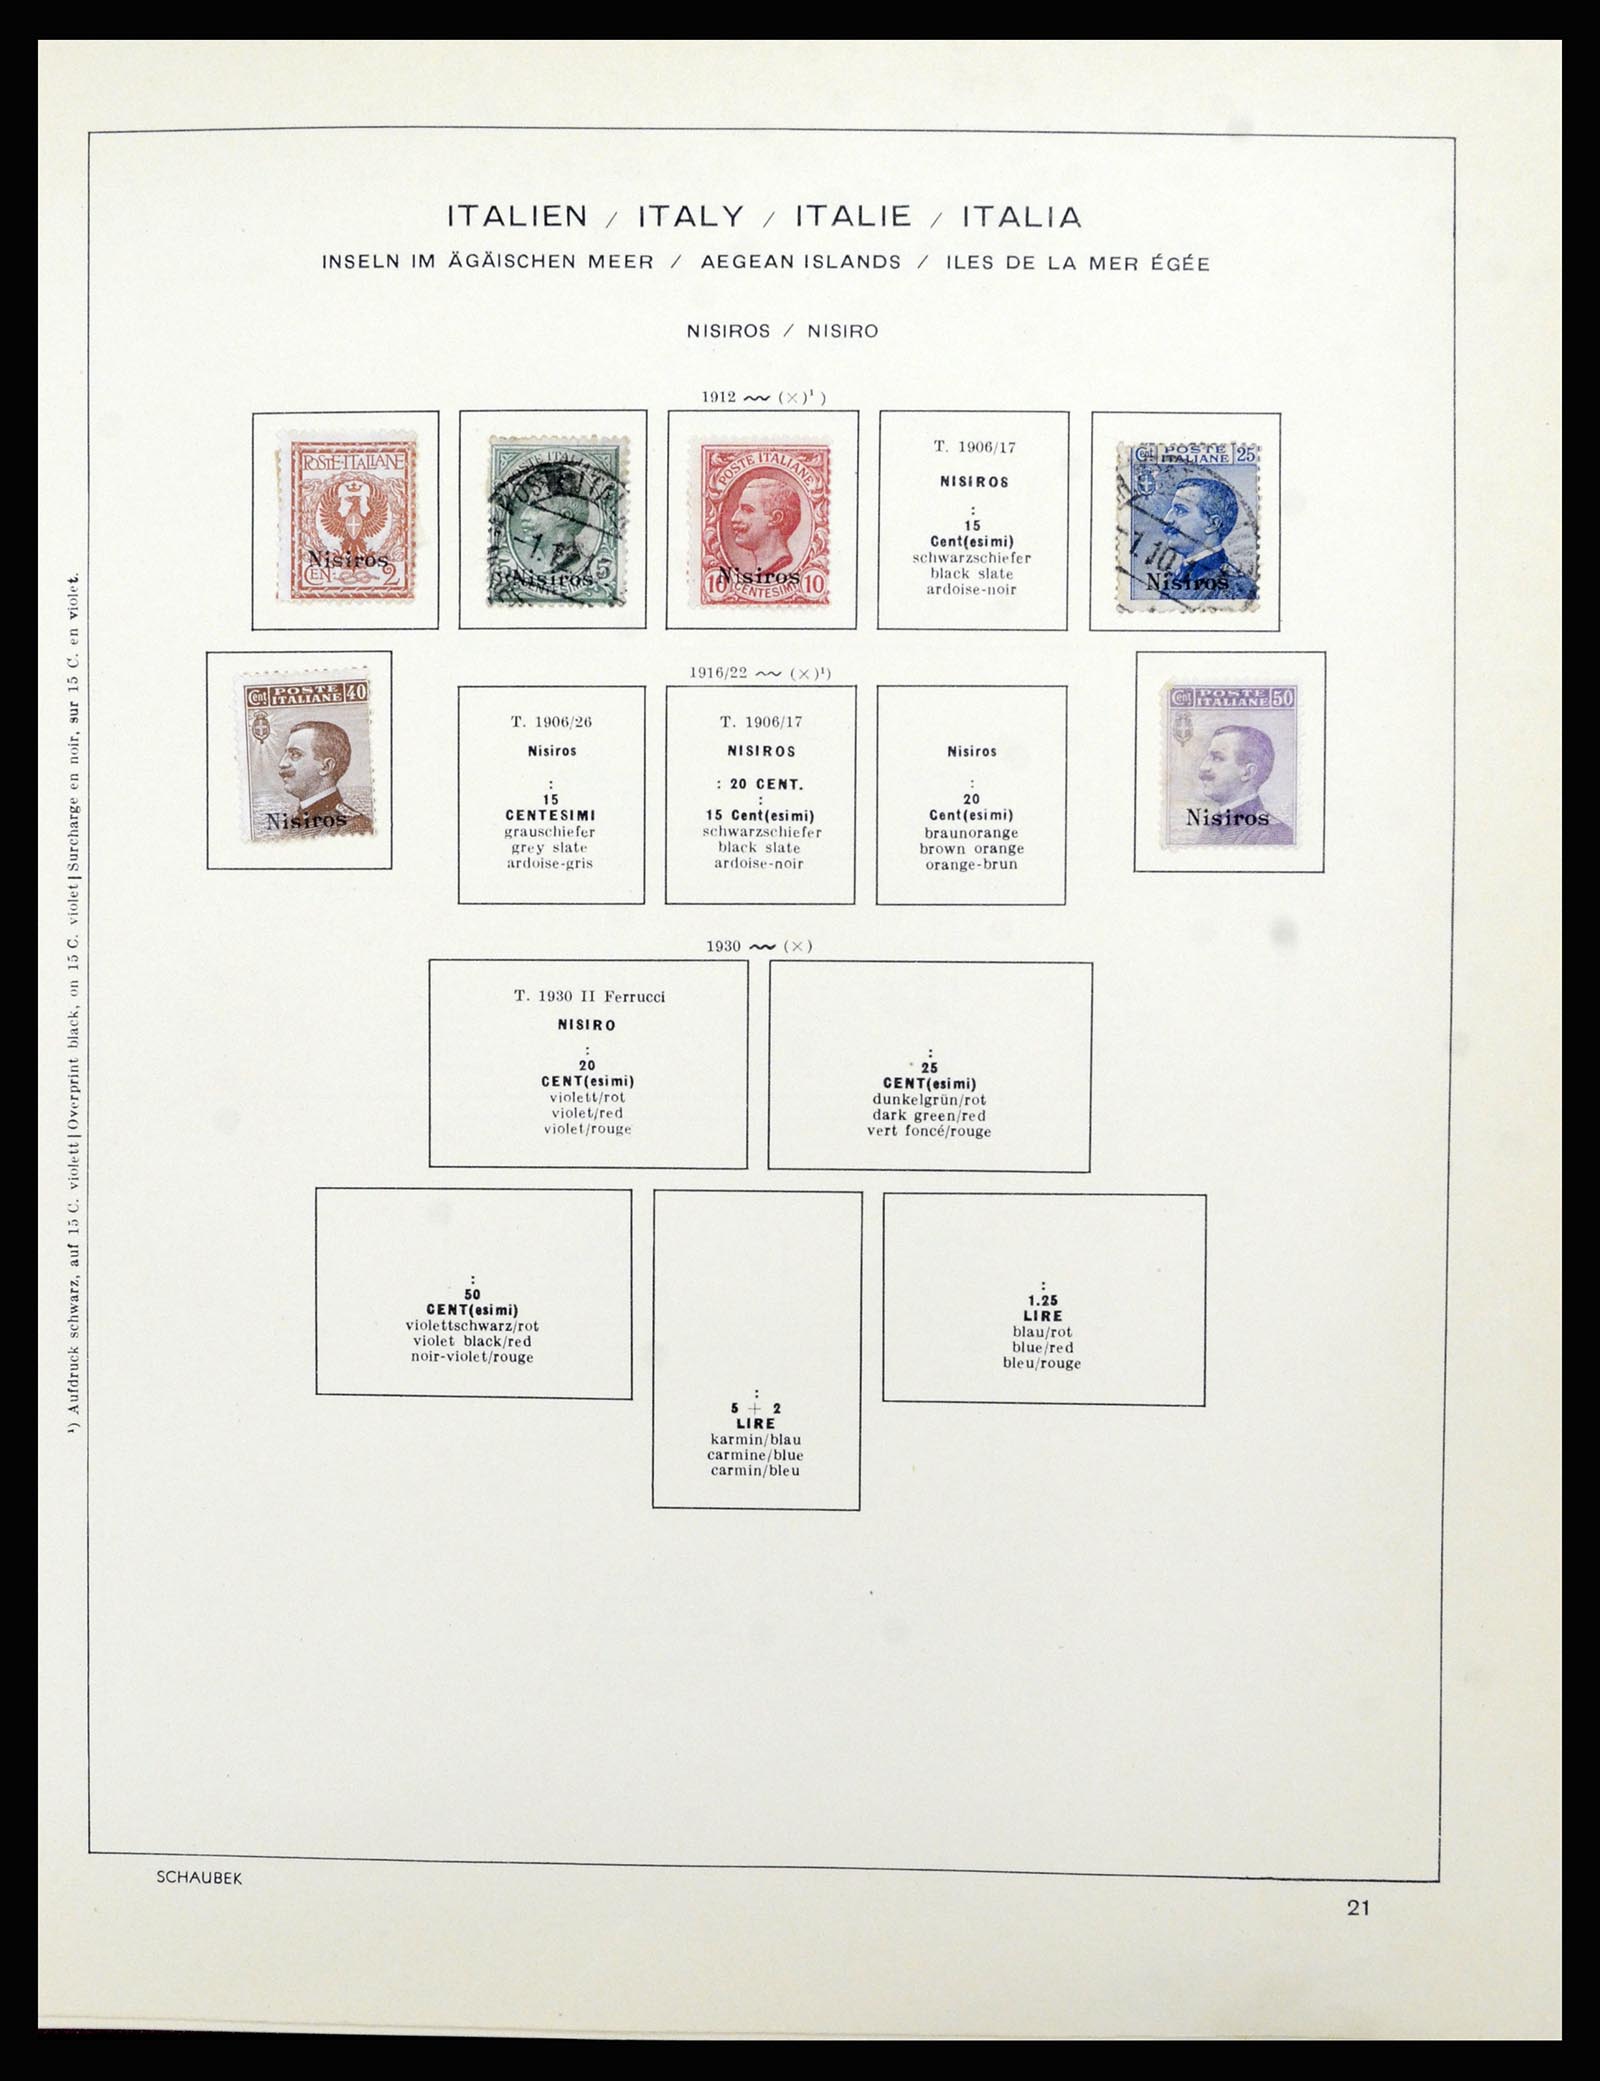 36576 031 - Stamp collection 36576 Italiaanse gebieden en koloniën 1874-1954.